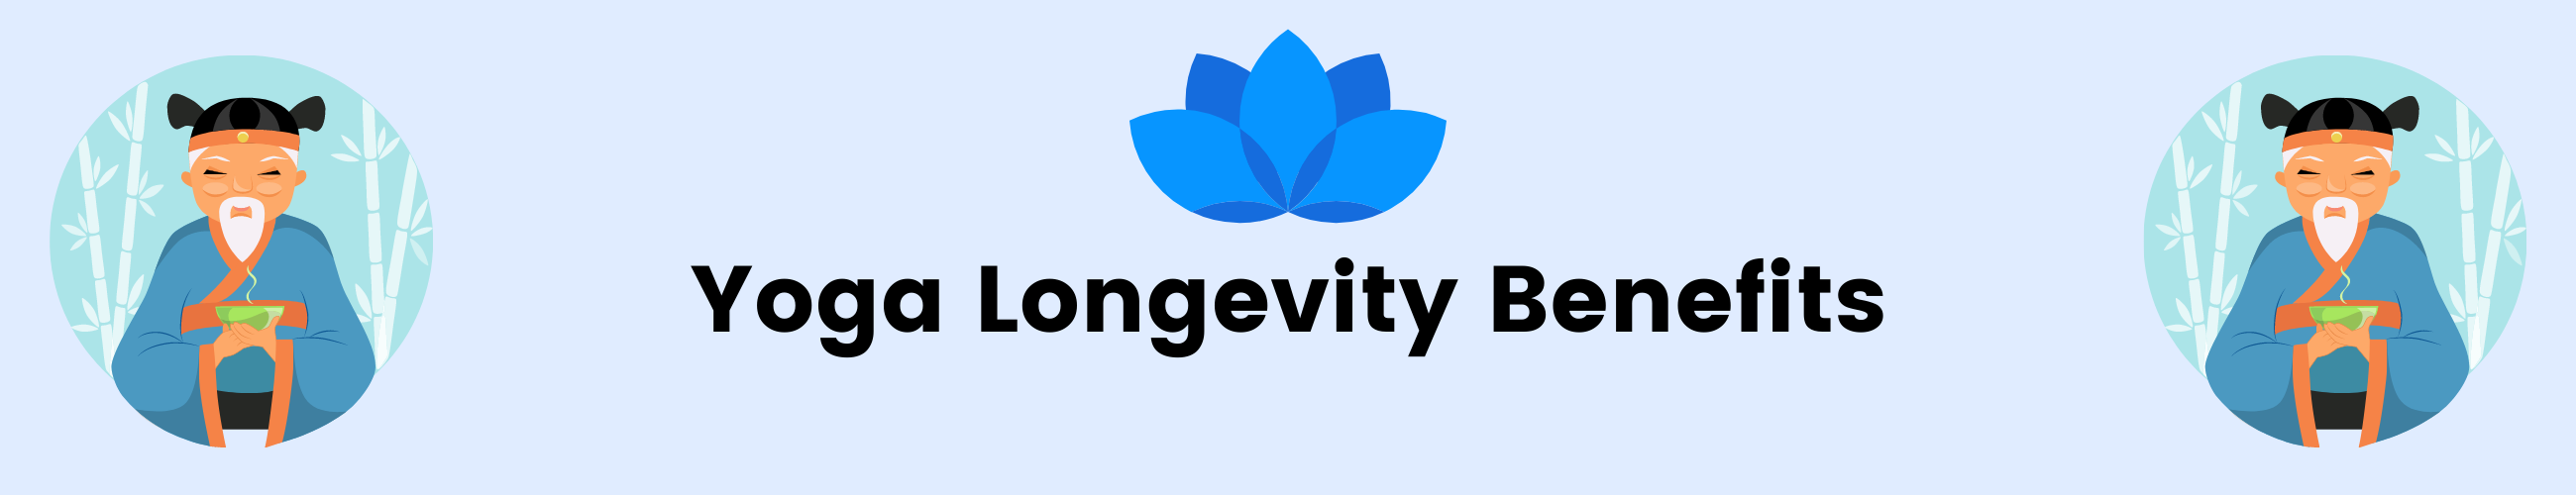 Yoga Longevity Benefits